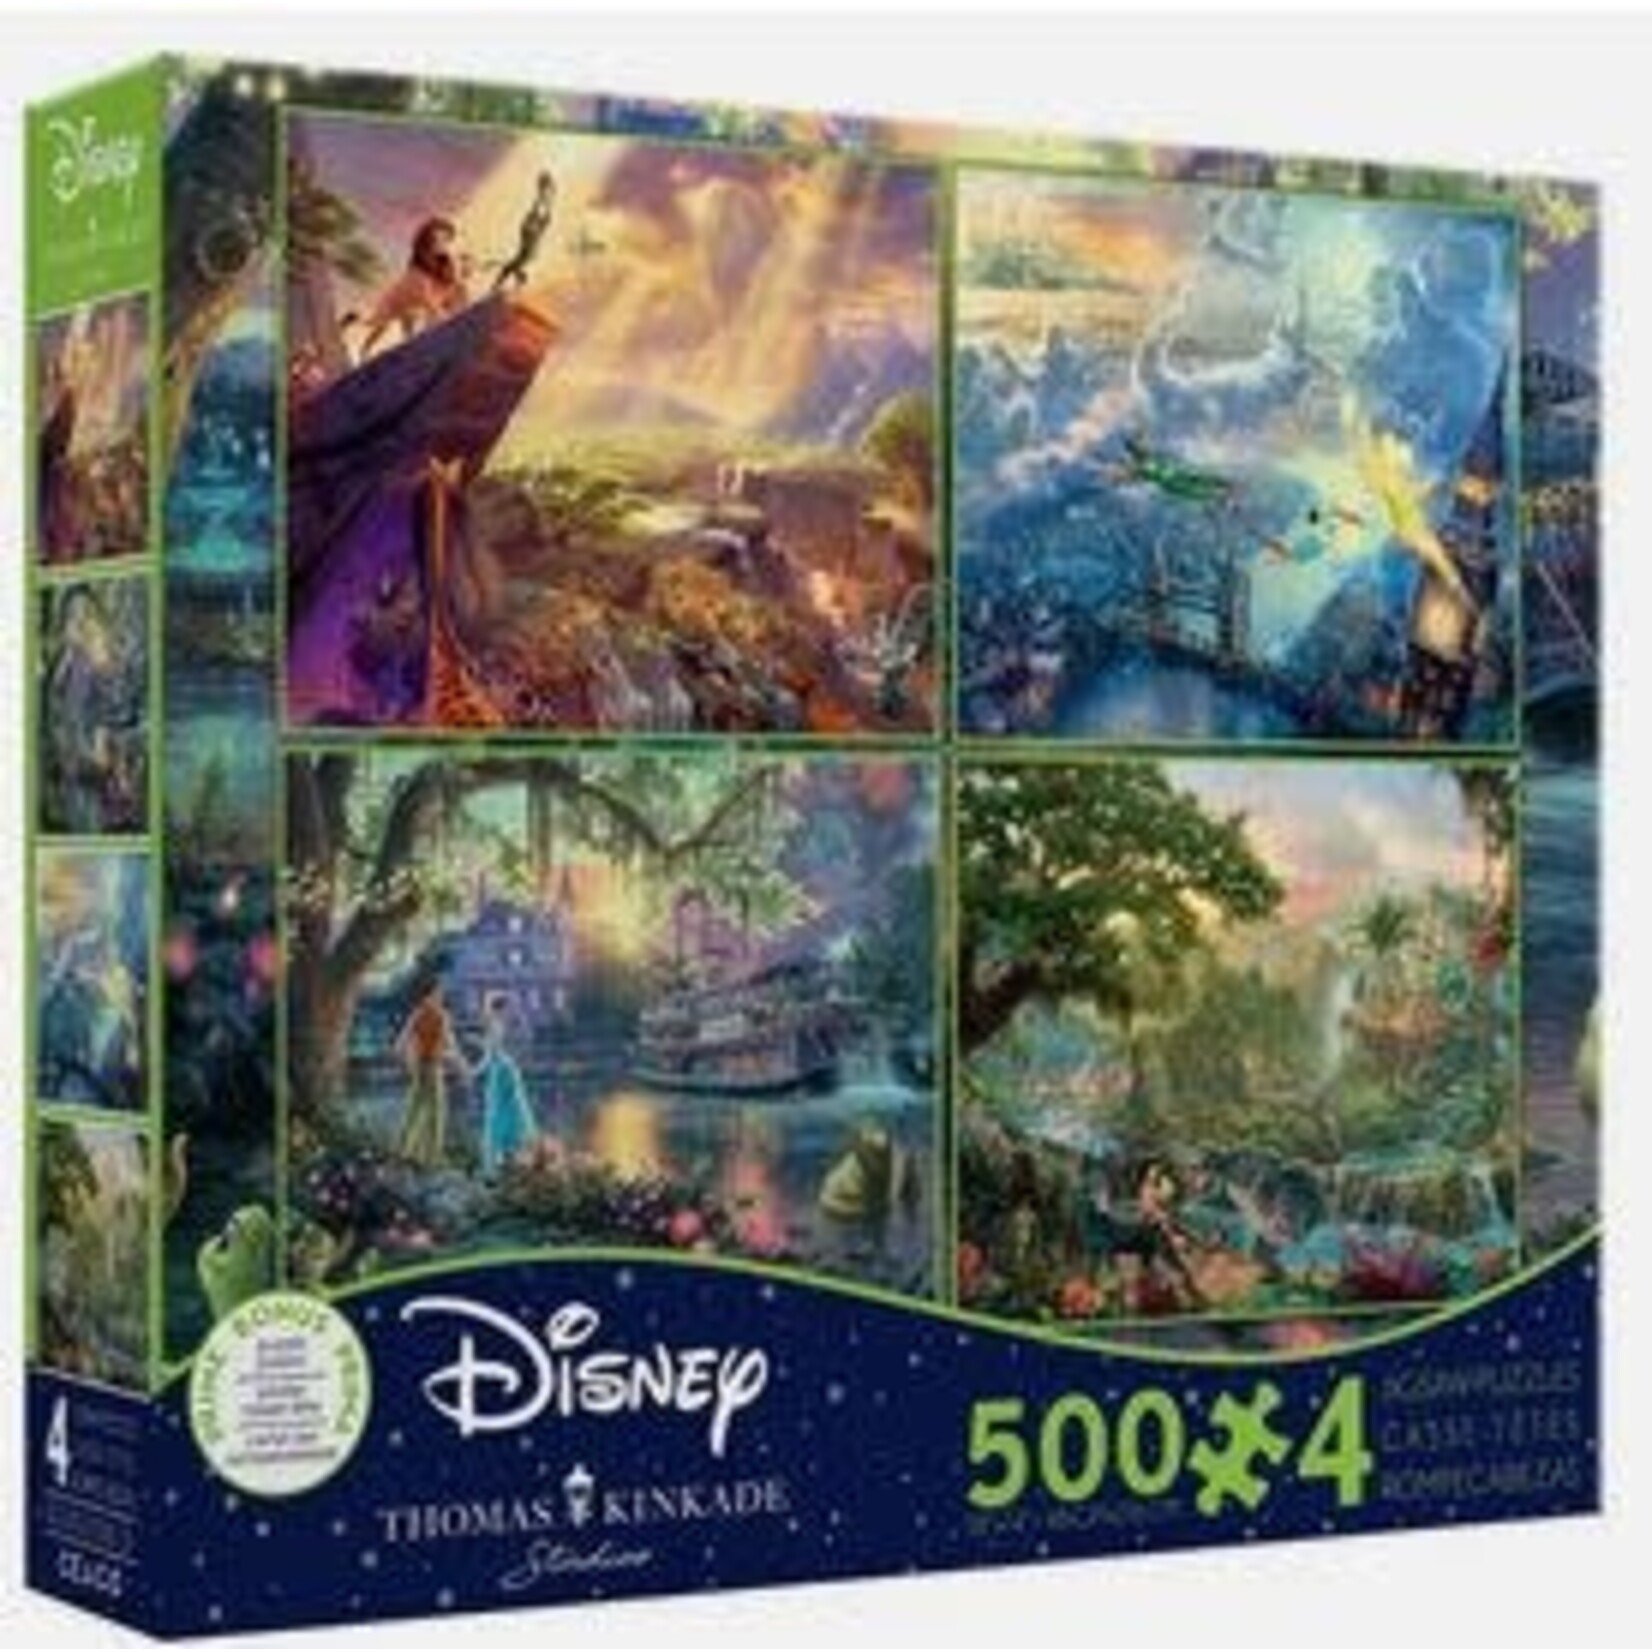 #18559 Thoman Kinkade 4 Puzzles Disney: Dragon Cache Used Game